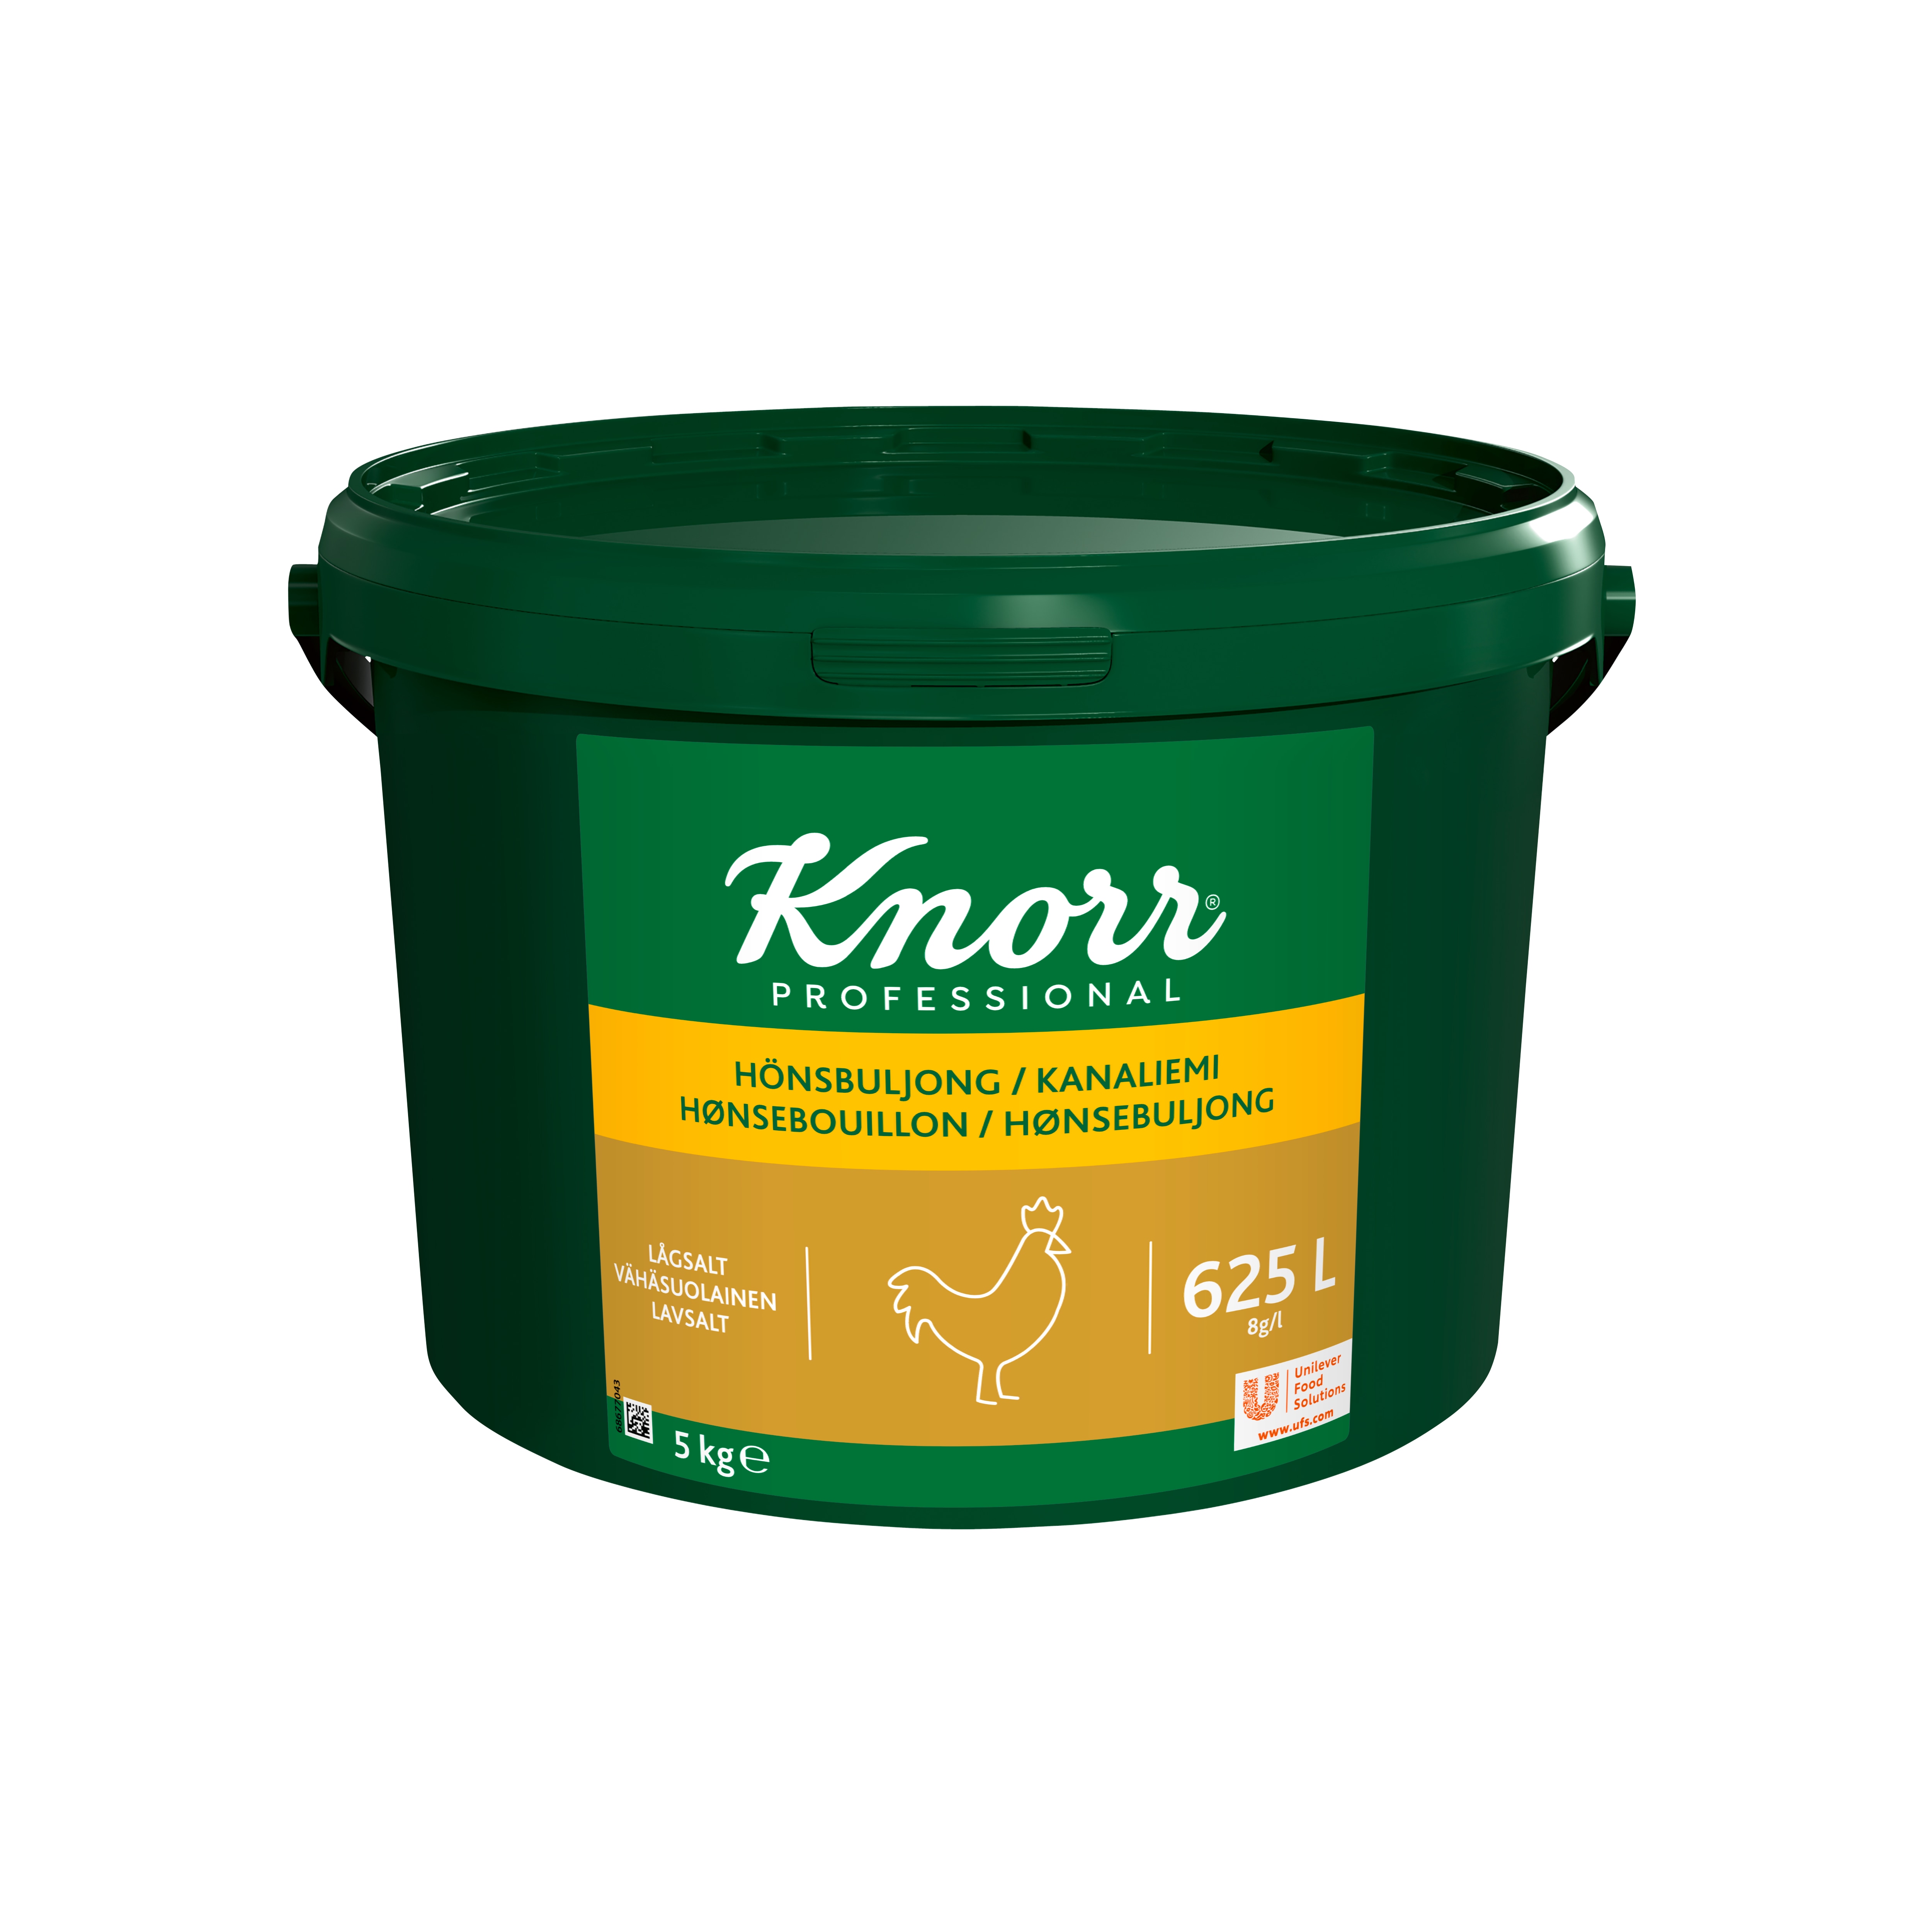 Knorr Hönsbuljong lågsalt 1x5kg